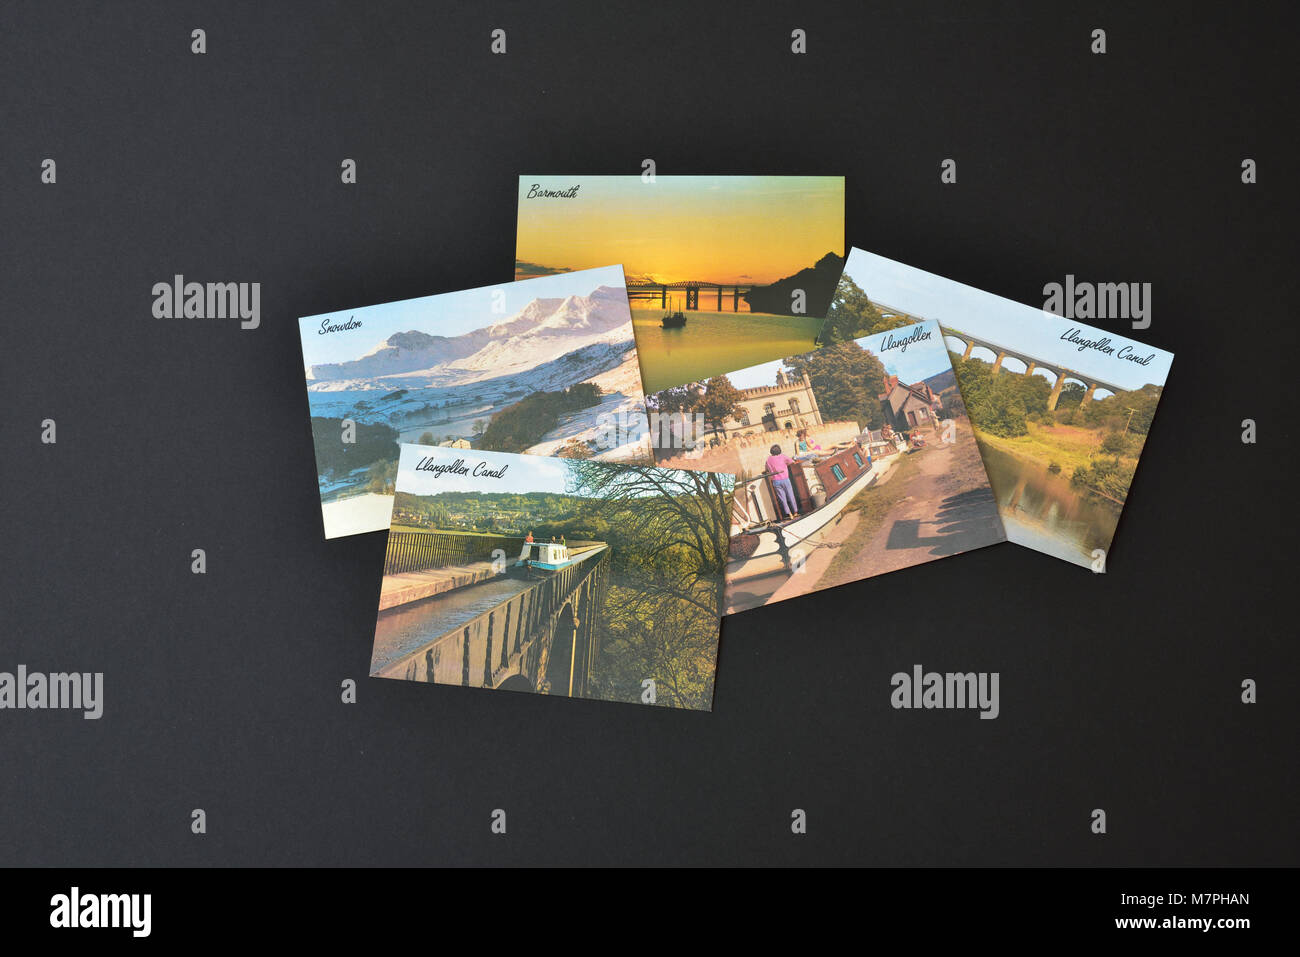 Fünf J Salmon Ltd Postkarten, die Waliser Ansichten, auf einem schwarzen Hintergrund angezeigt. Stockfoto